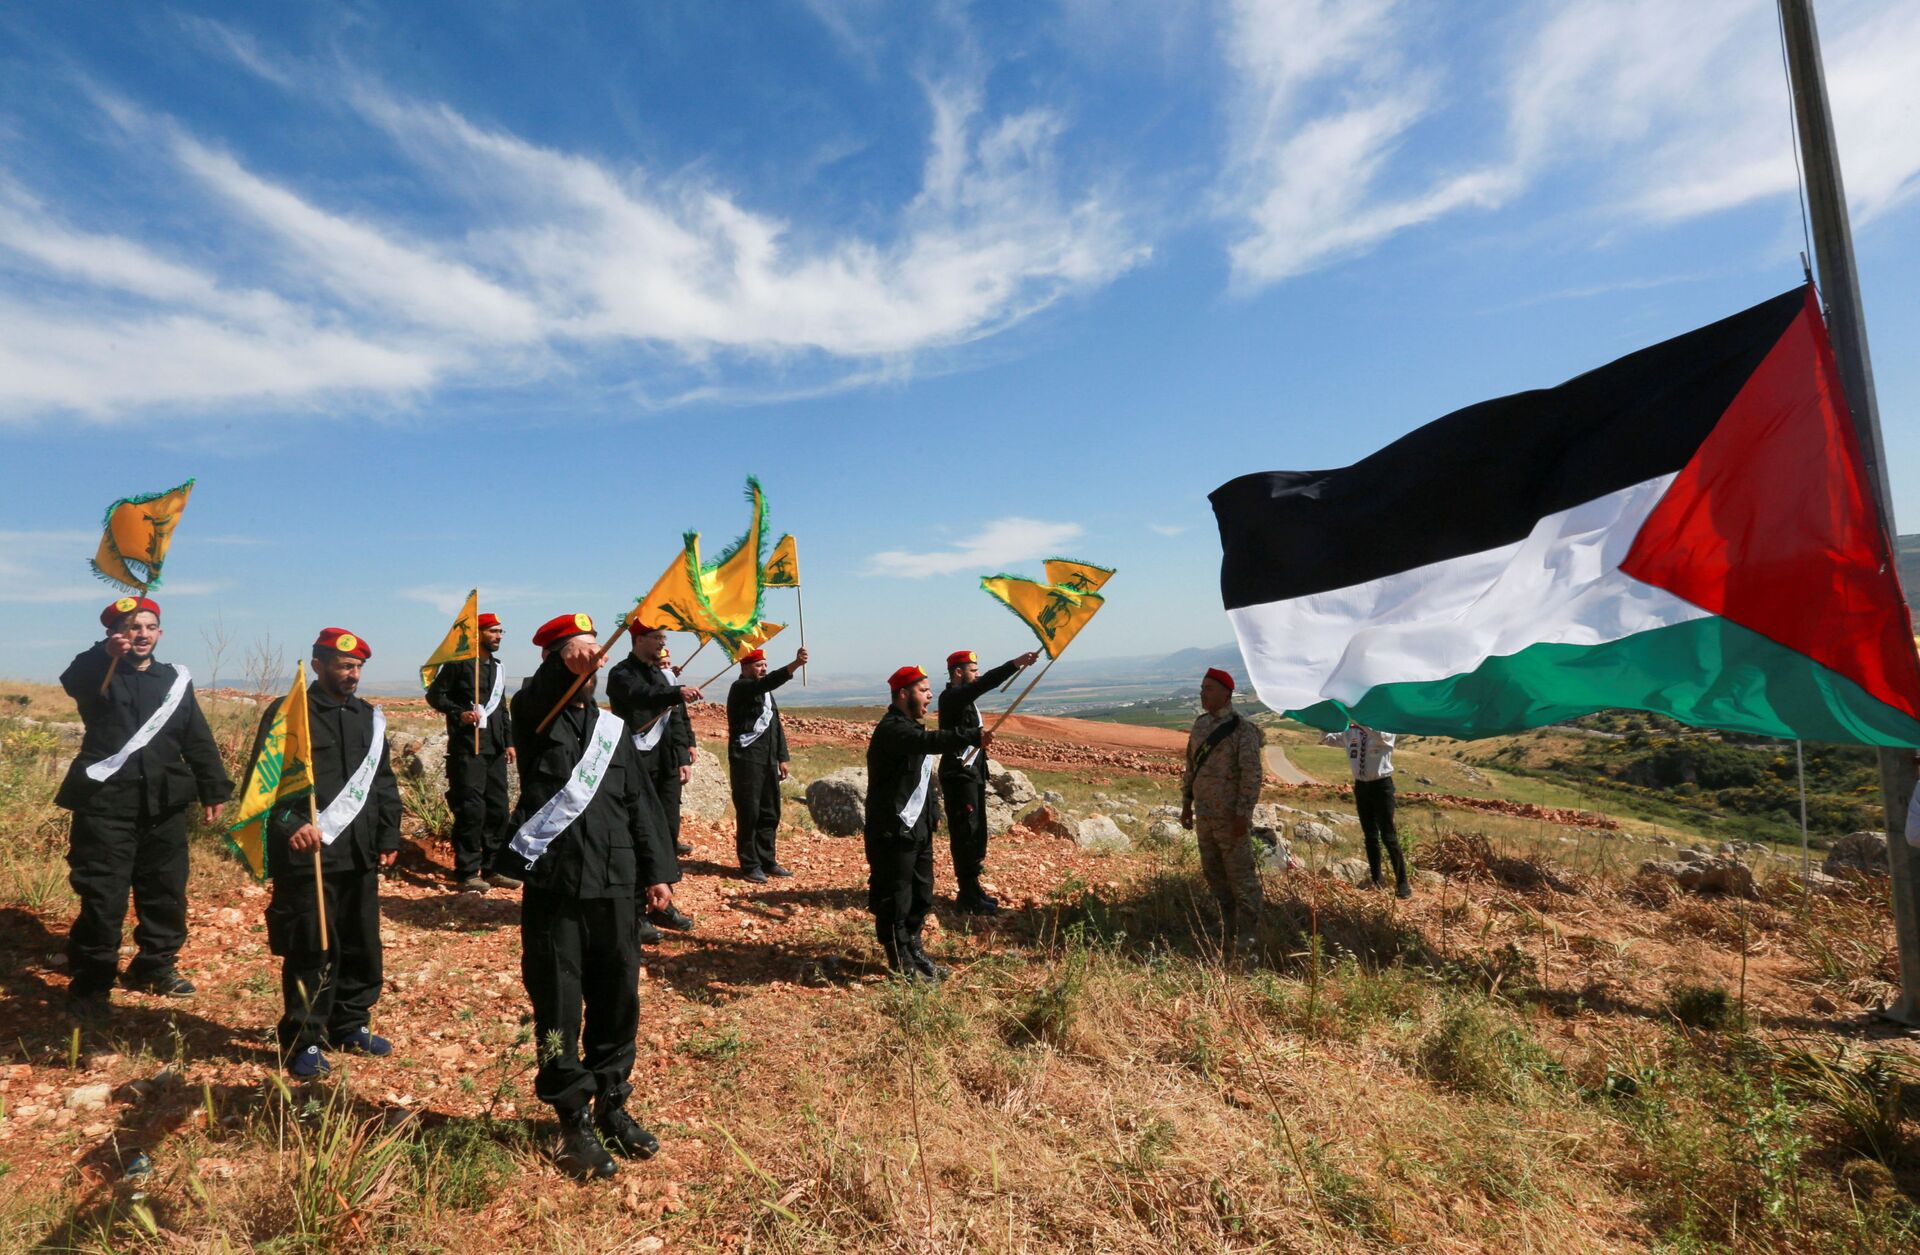 Por que o Hezbollah, mesmo apoiando Palestina, pode não ter aproveitado conflito para atacar Israel? - Sputnik Brasil, 1920, 20.05.2021